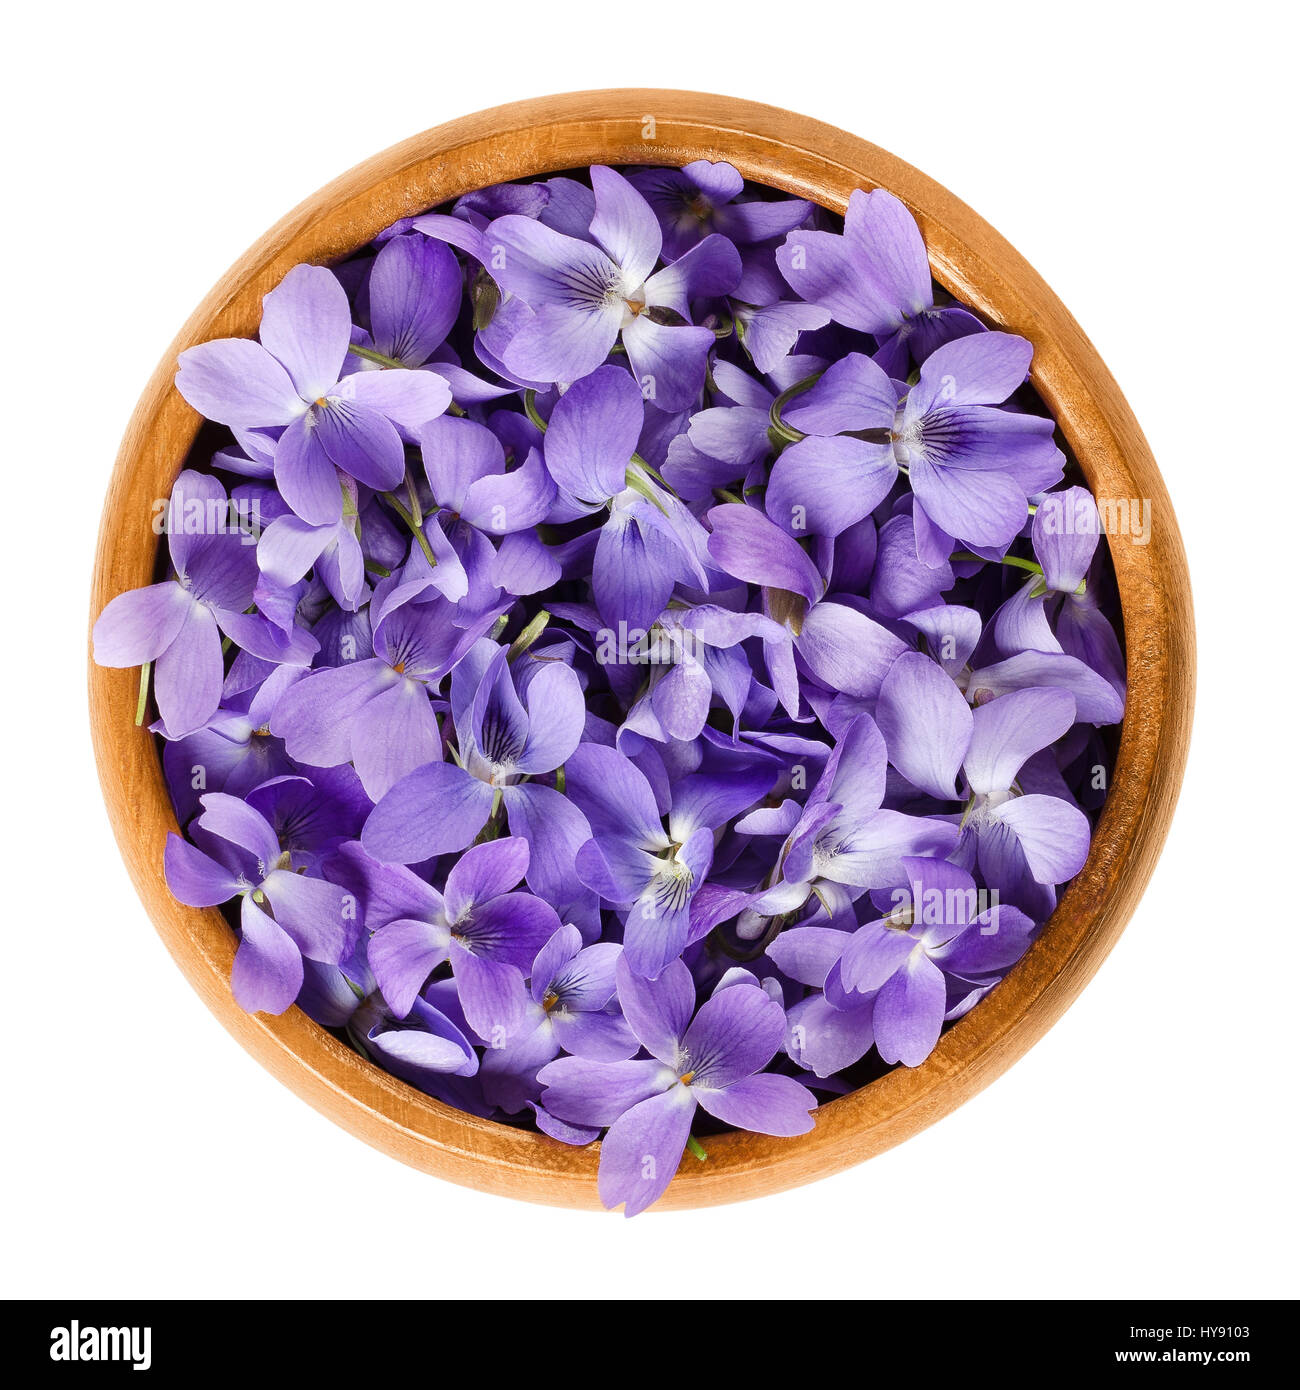 Wild fiori viola nella ciotola di legno. Anche la lavorazione del legno, dolce, inglese, comune o giardino violetto. Viola odorata. Fiori commestibili, utilizzati come decorazione per insalata. Foto Stock